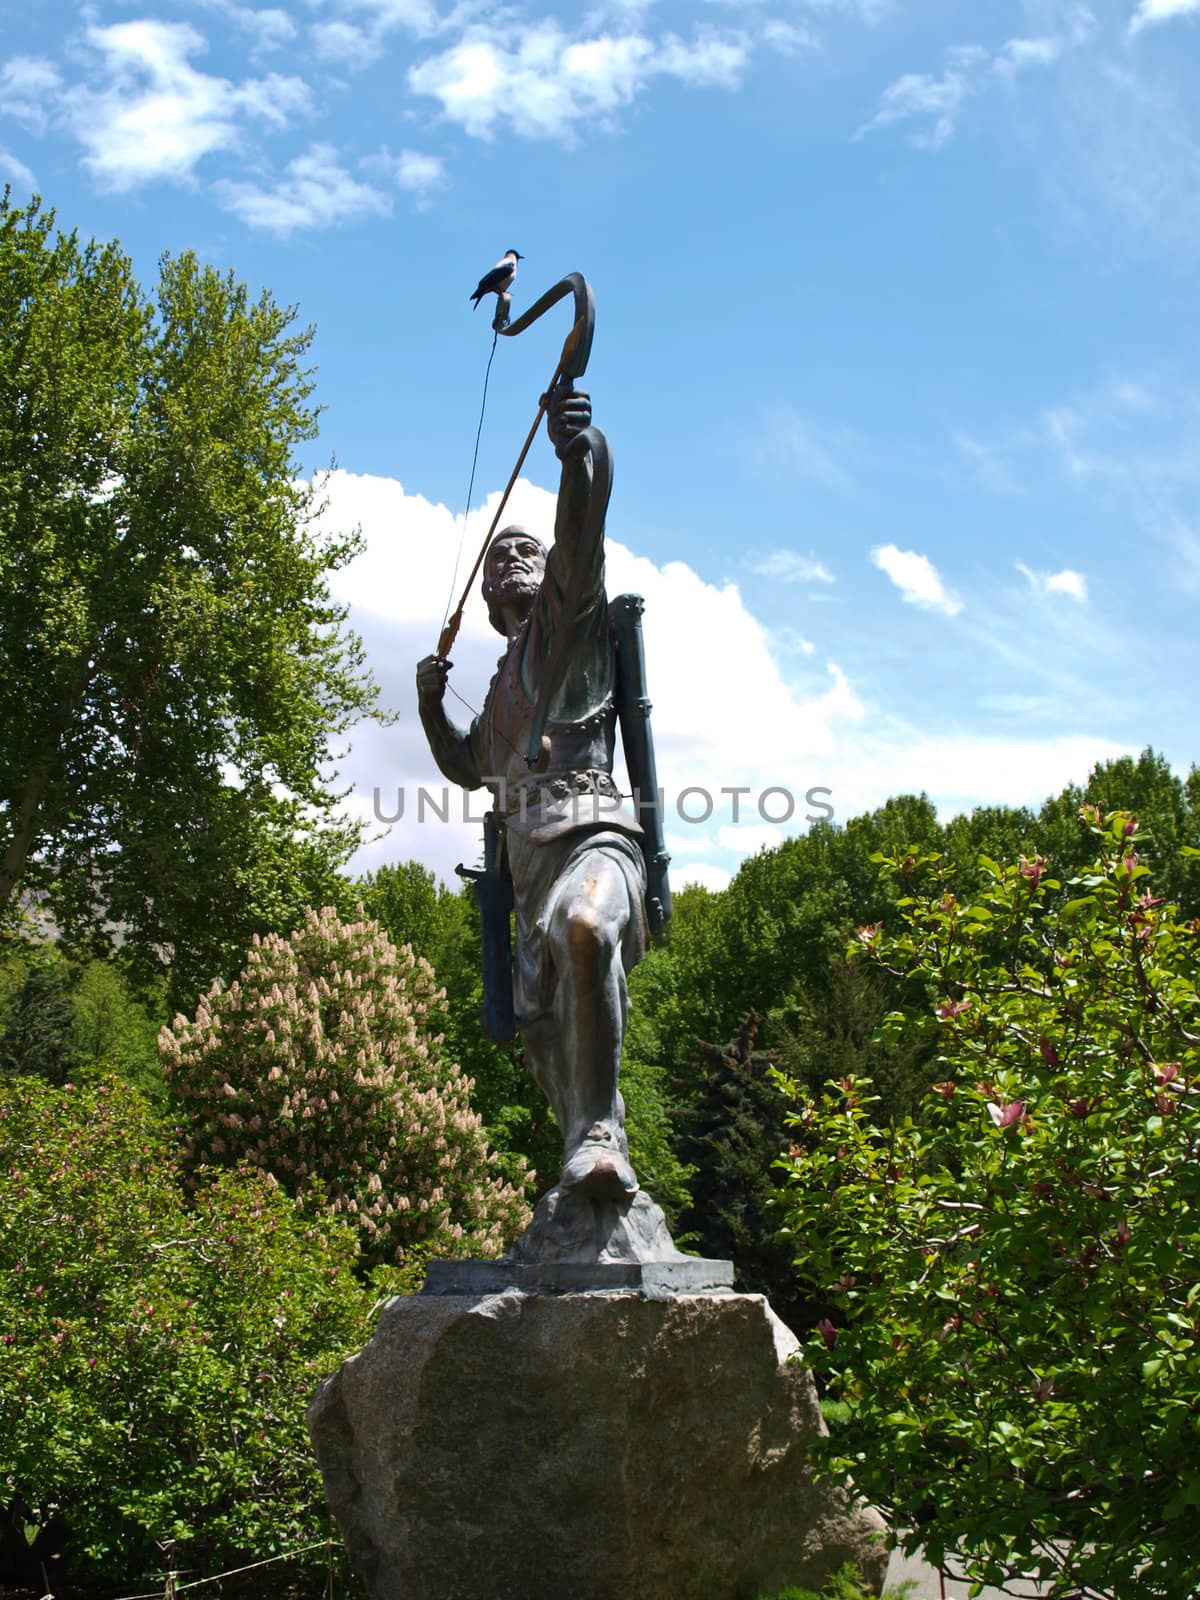 Statue of an archer in Tehran, Iran by gururugu